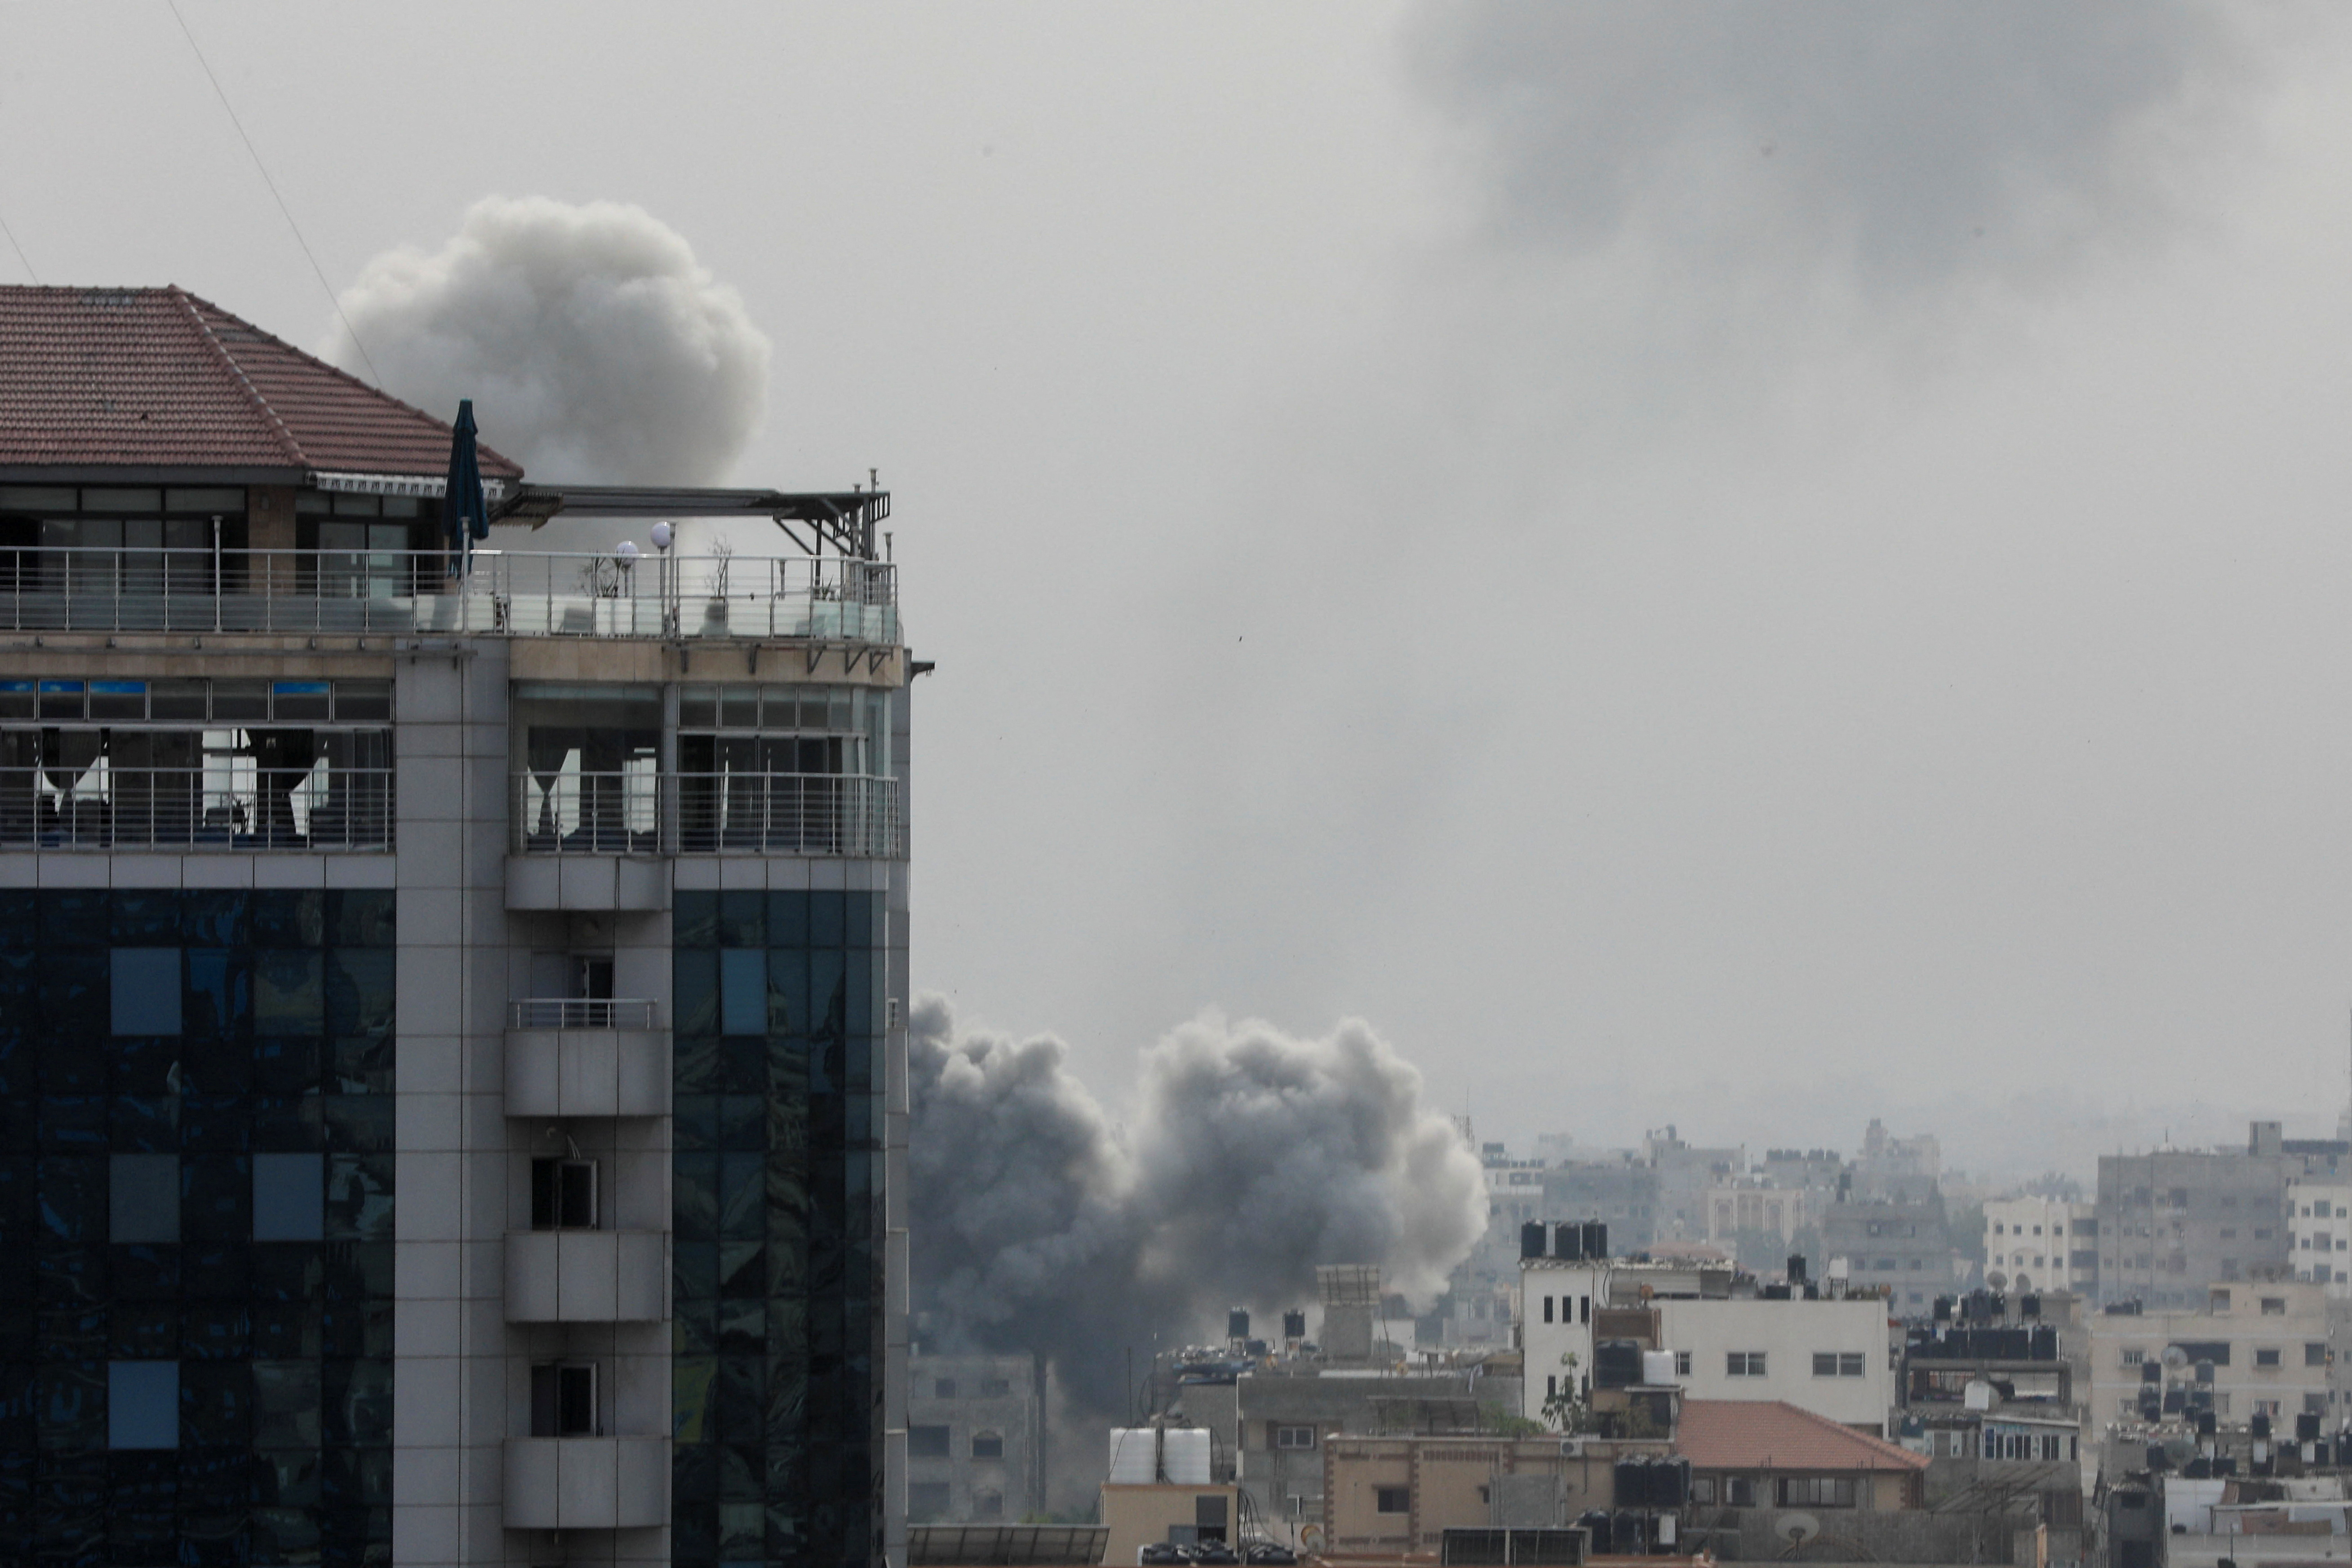 ガザ北部病院付近に空爆、南部境界地帯ではイスラエル軍と衝突か - ロイター (Reuters Japan)